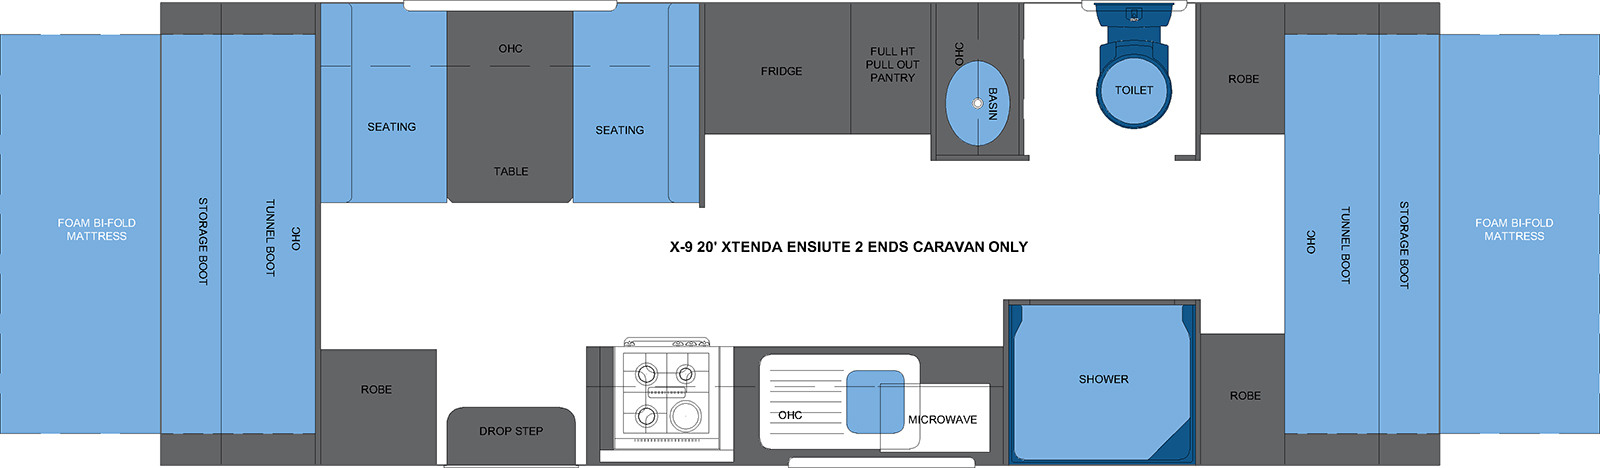 X-9 20' XTENDA ENSUITE 2 ENDS CARAVAN ONLY